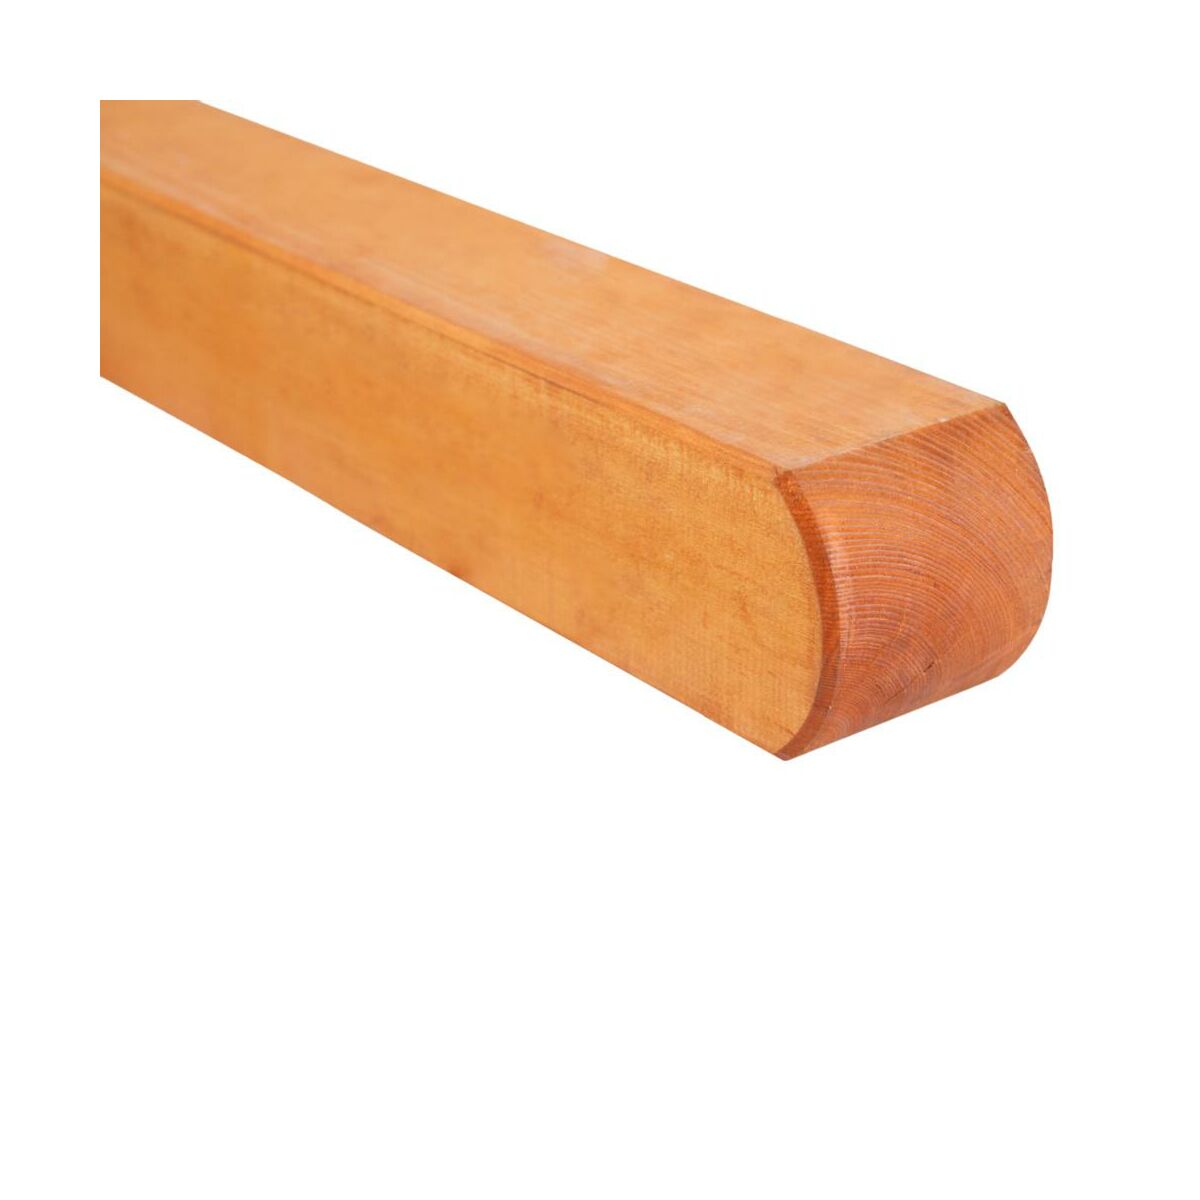 Kantówka drewniana Bern 9x9x190 cm brązowa Werth-Holz